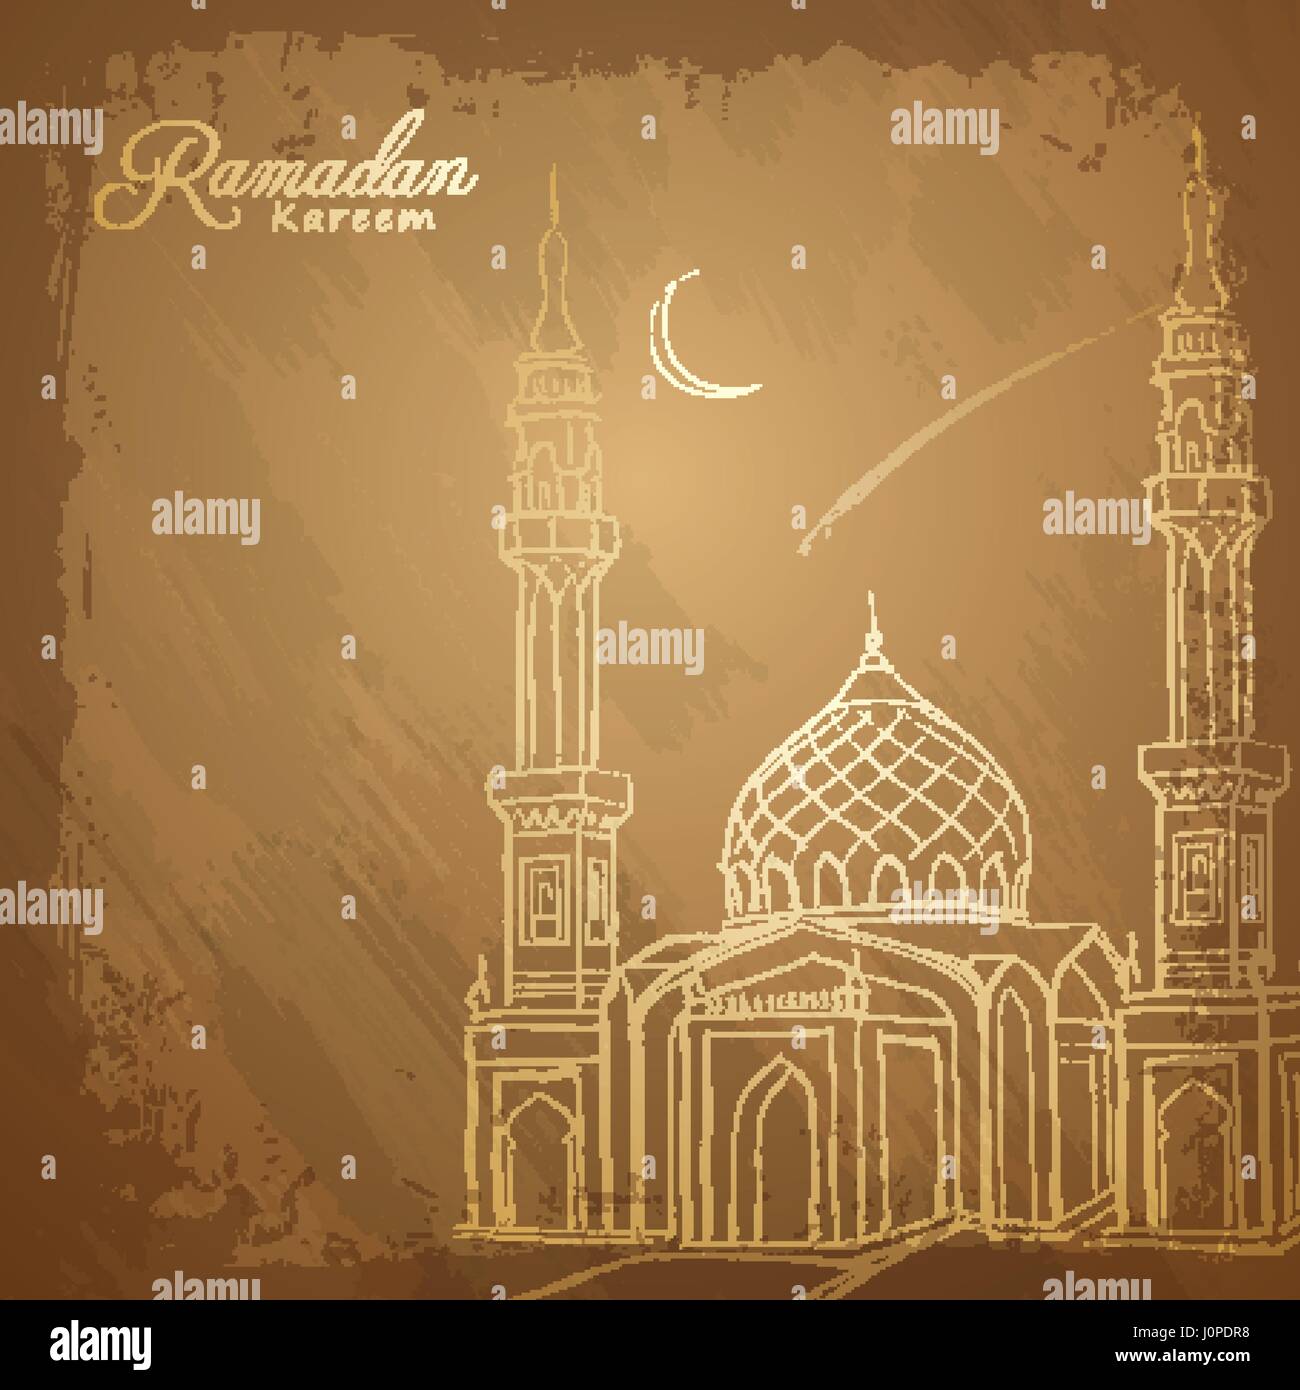 Ramadan Kareem background outline mosque sketch Stock Vector